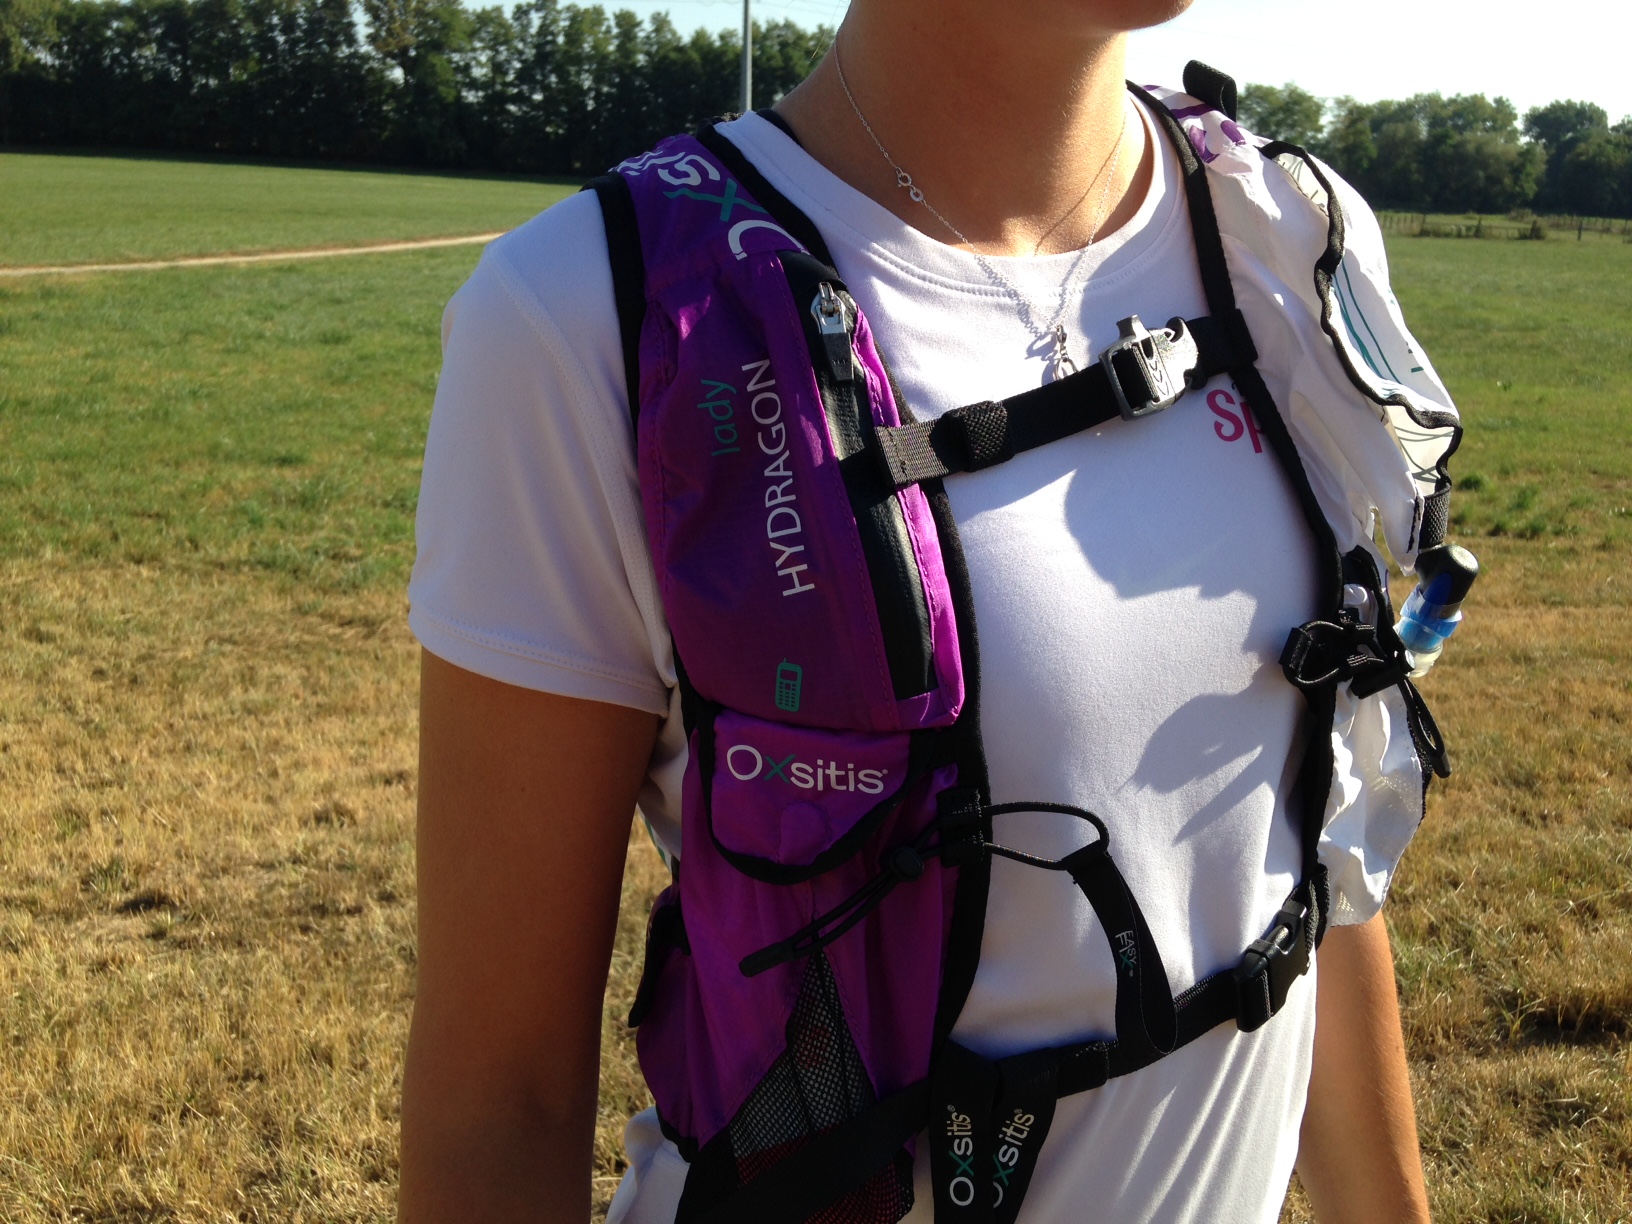 Test] Les sacs et ceintures Oxsitis pour femme - We Are SportLab